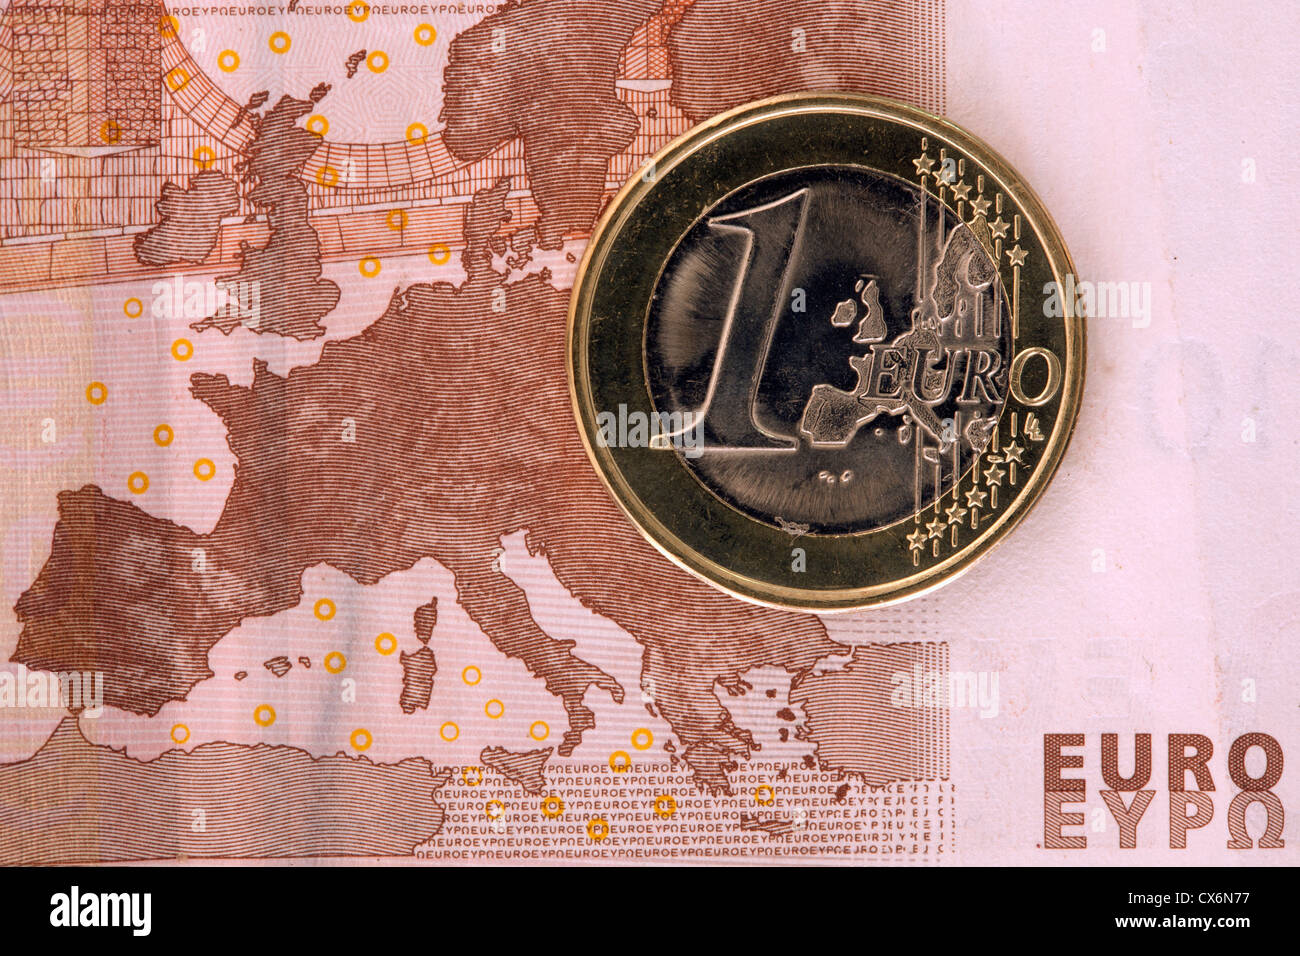 Dettaglio di una decina di banconote in euro con una moneta euro sulla sommità di esso Foto Stock